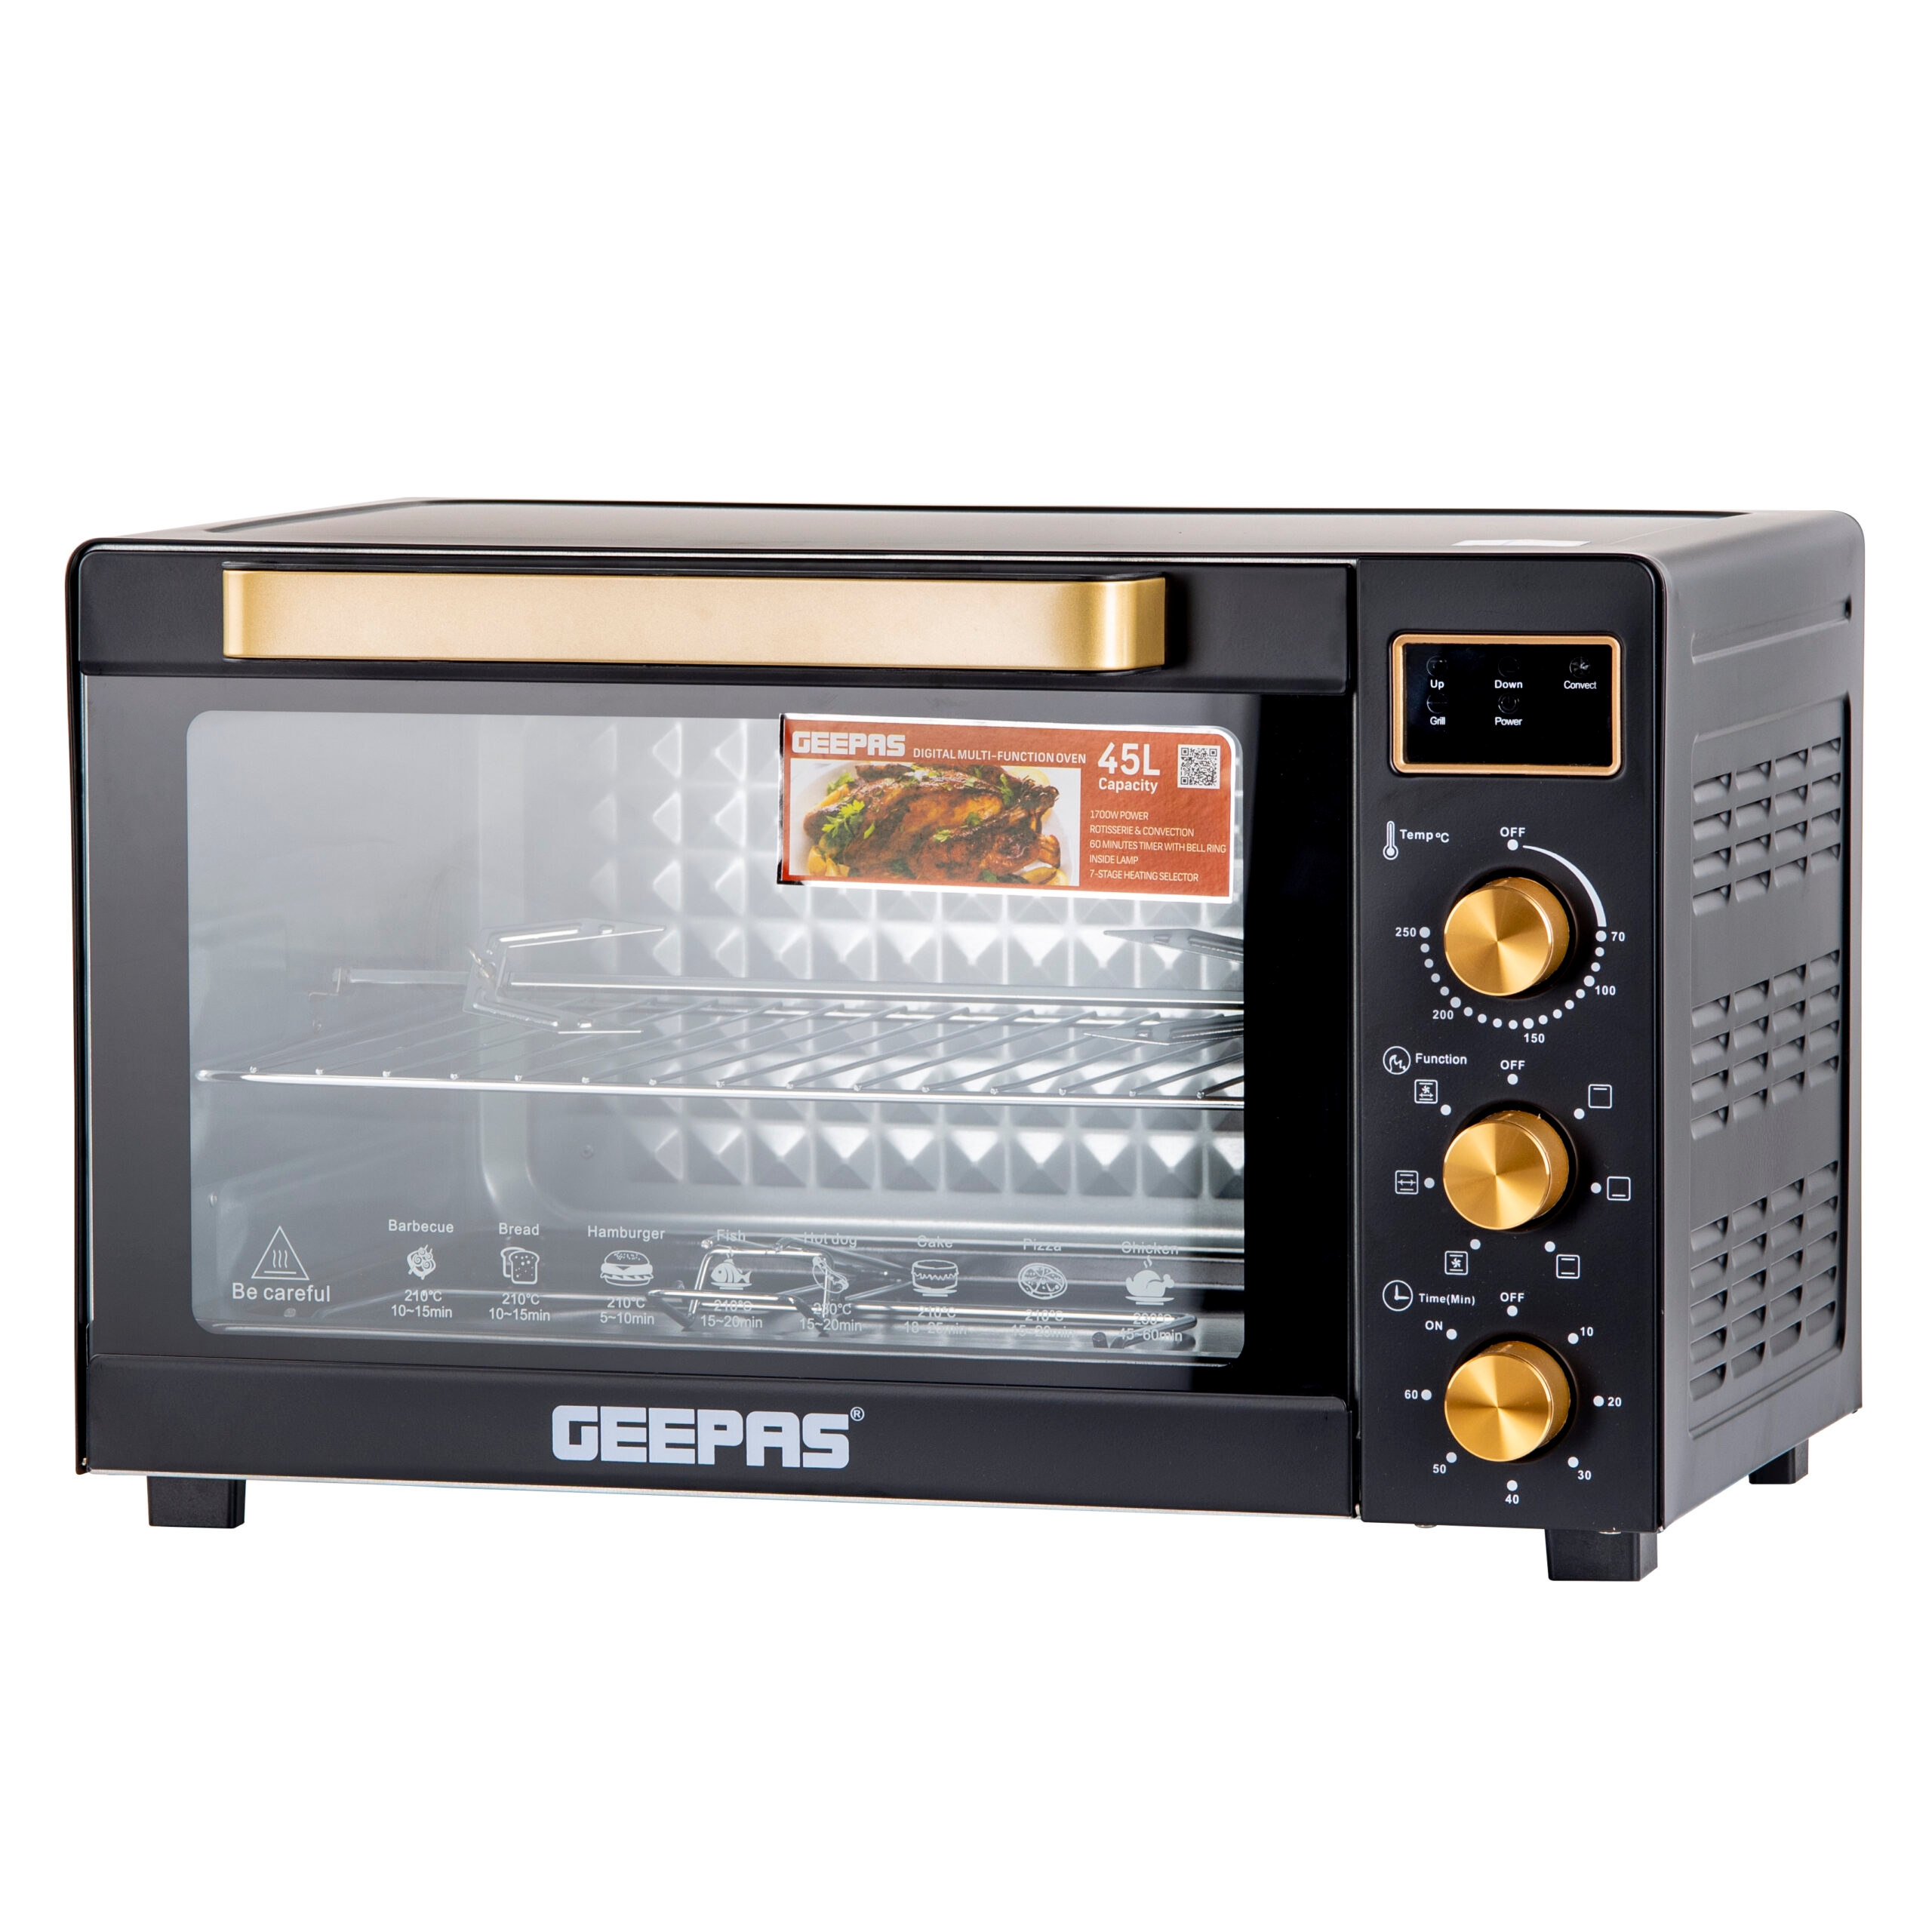 فرن كهربائي متعدد الاستخدامات بسعة 45 لتر Geepas Digital Multifunction Oven